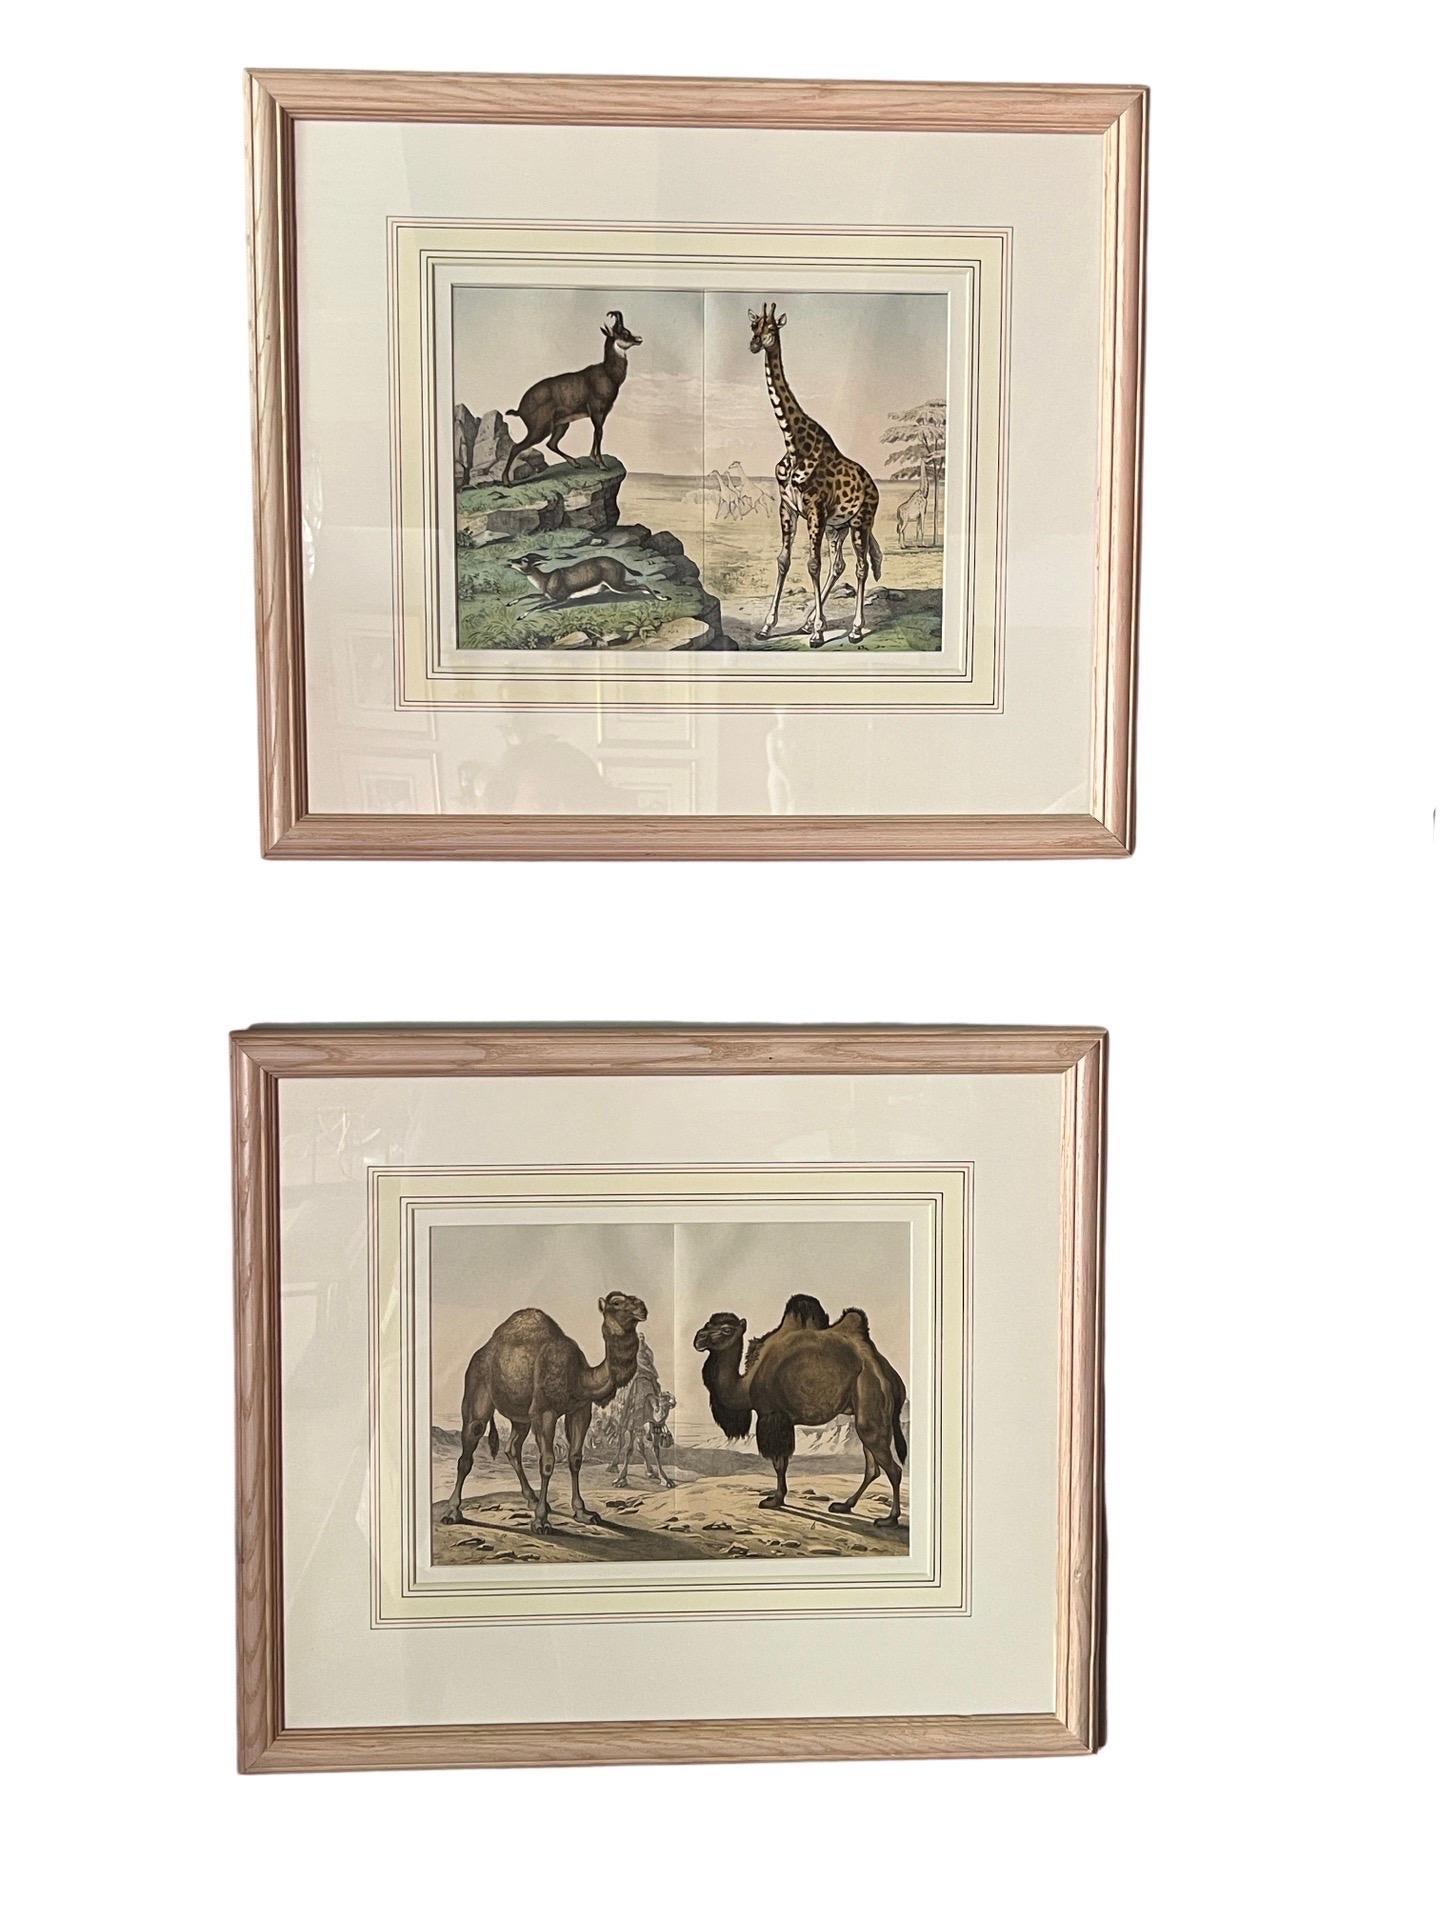 Ensemble de 4 gravures de l'histoire naturelle du règne animal Circa 1860.

Chacune de ces gravures d'ex-libris finement colorées à la main représente des animaux du monde entier. Cette série présente des mammifères, notamment des chameaux, des